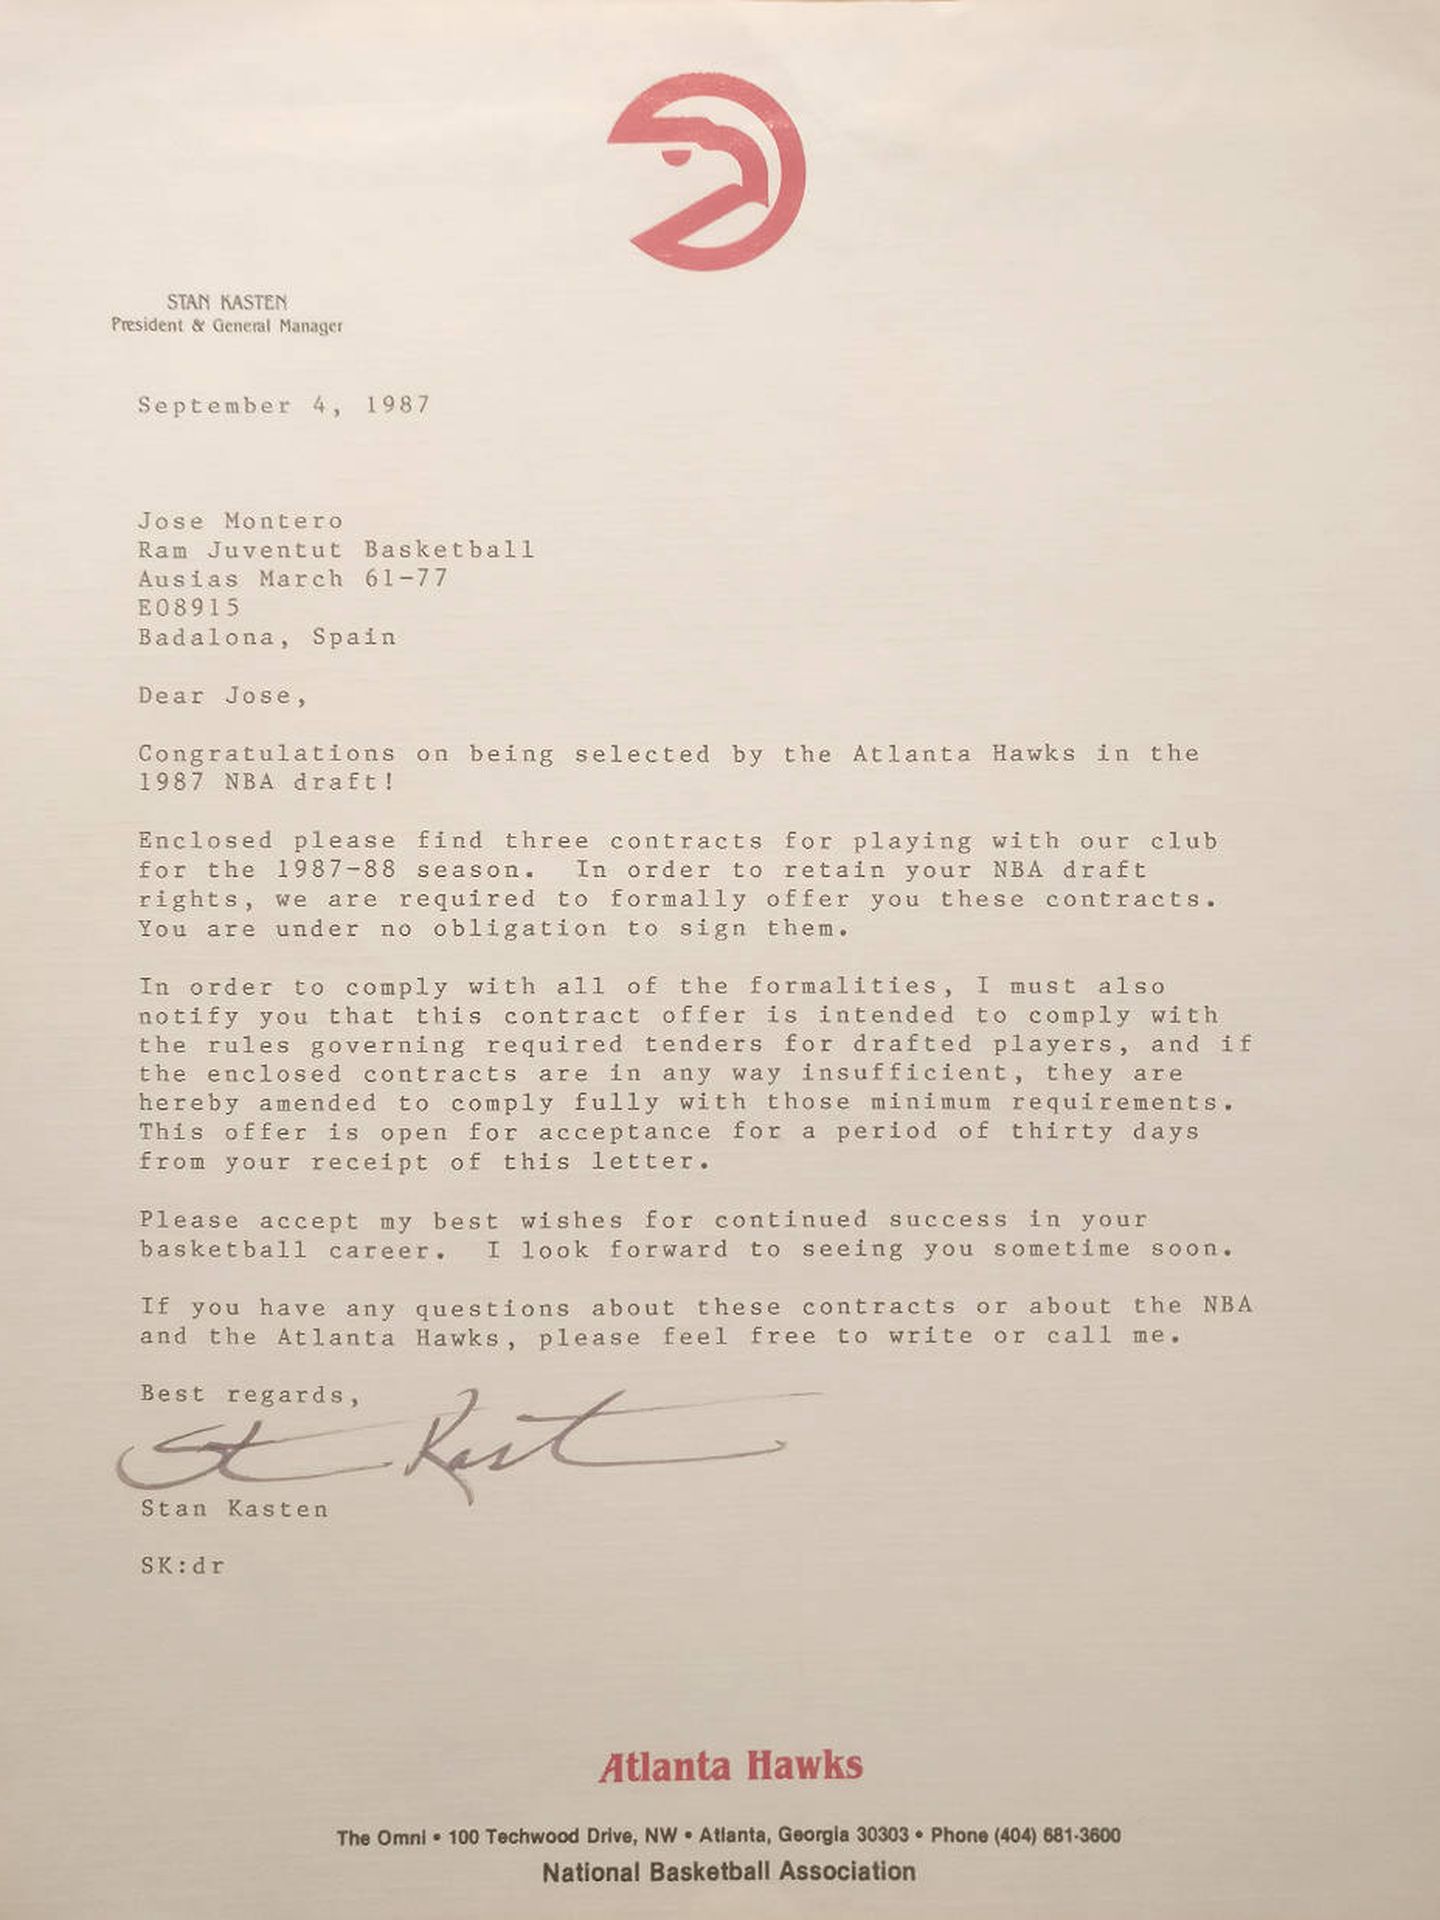 La carta en la que Atlanta Hawks le ofrecía un contrato a José Montero. El jugador nunca lo llegó a firmar. (Foto: D. O.)